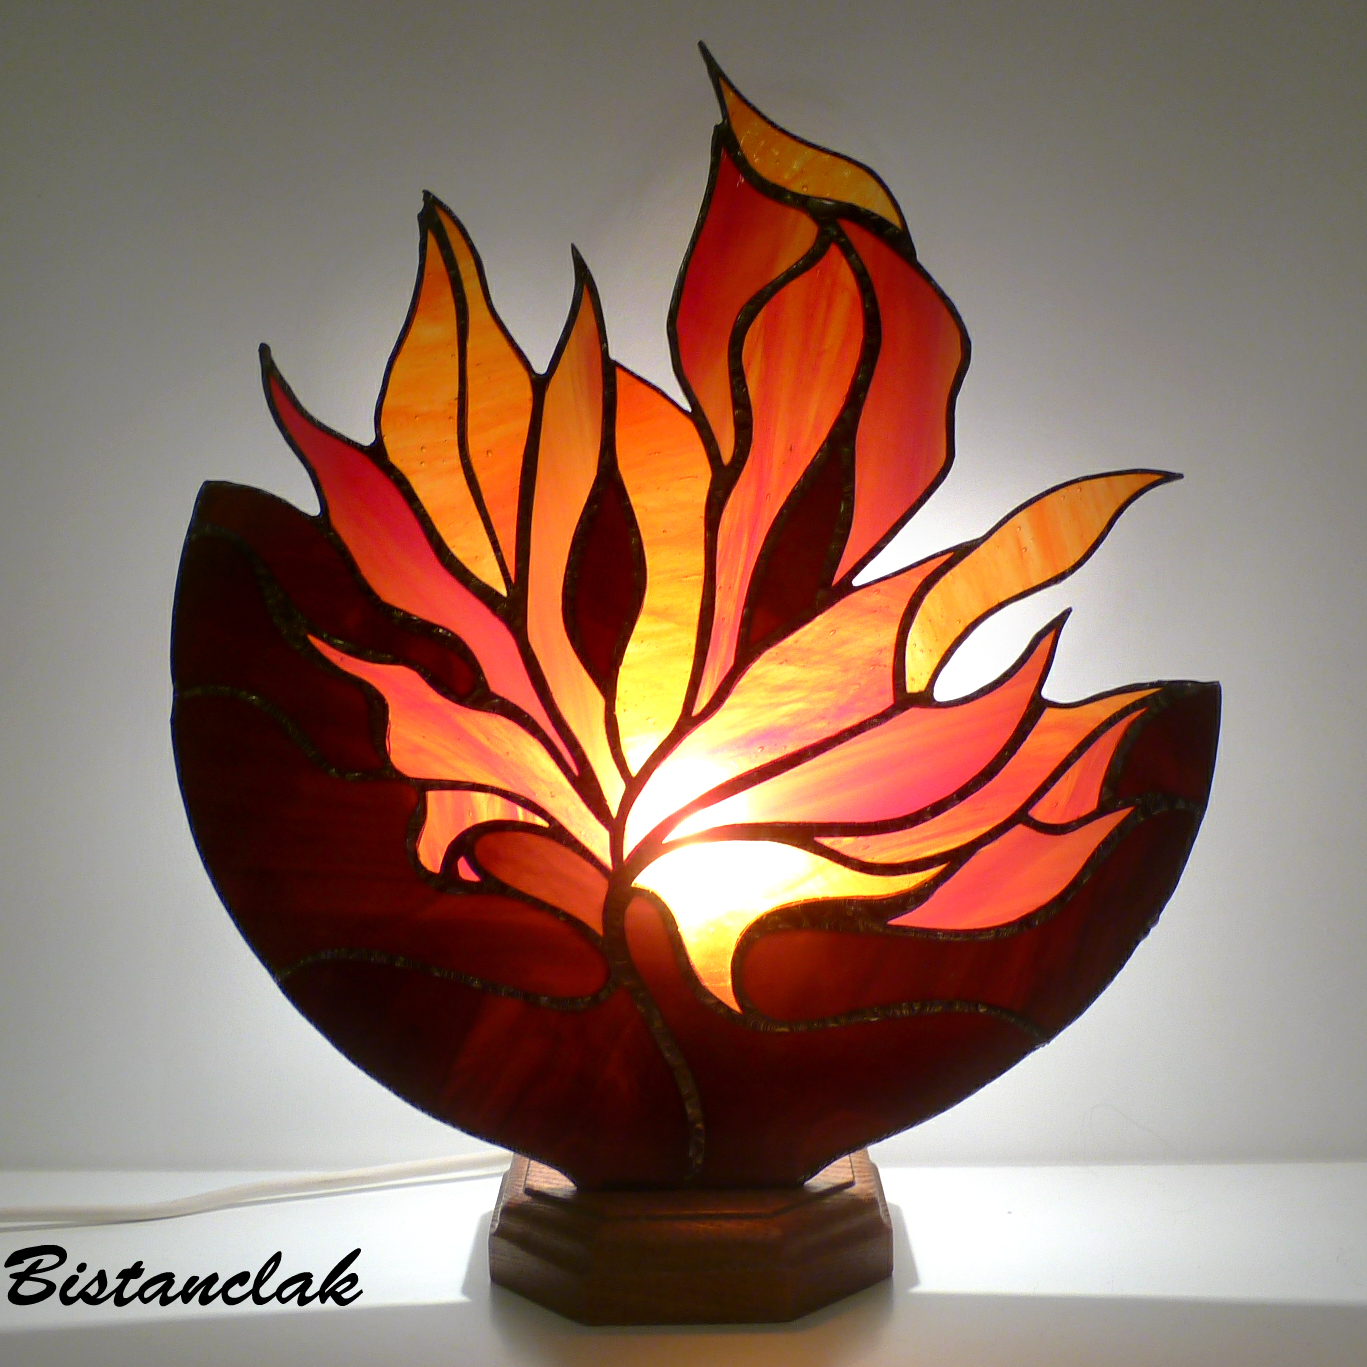 luminaire vitrail tiffany en forme de feuille d'automne rouge orangé